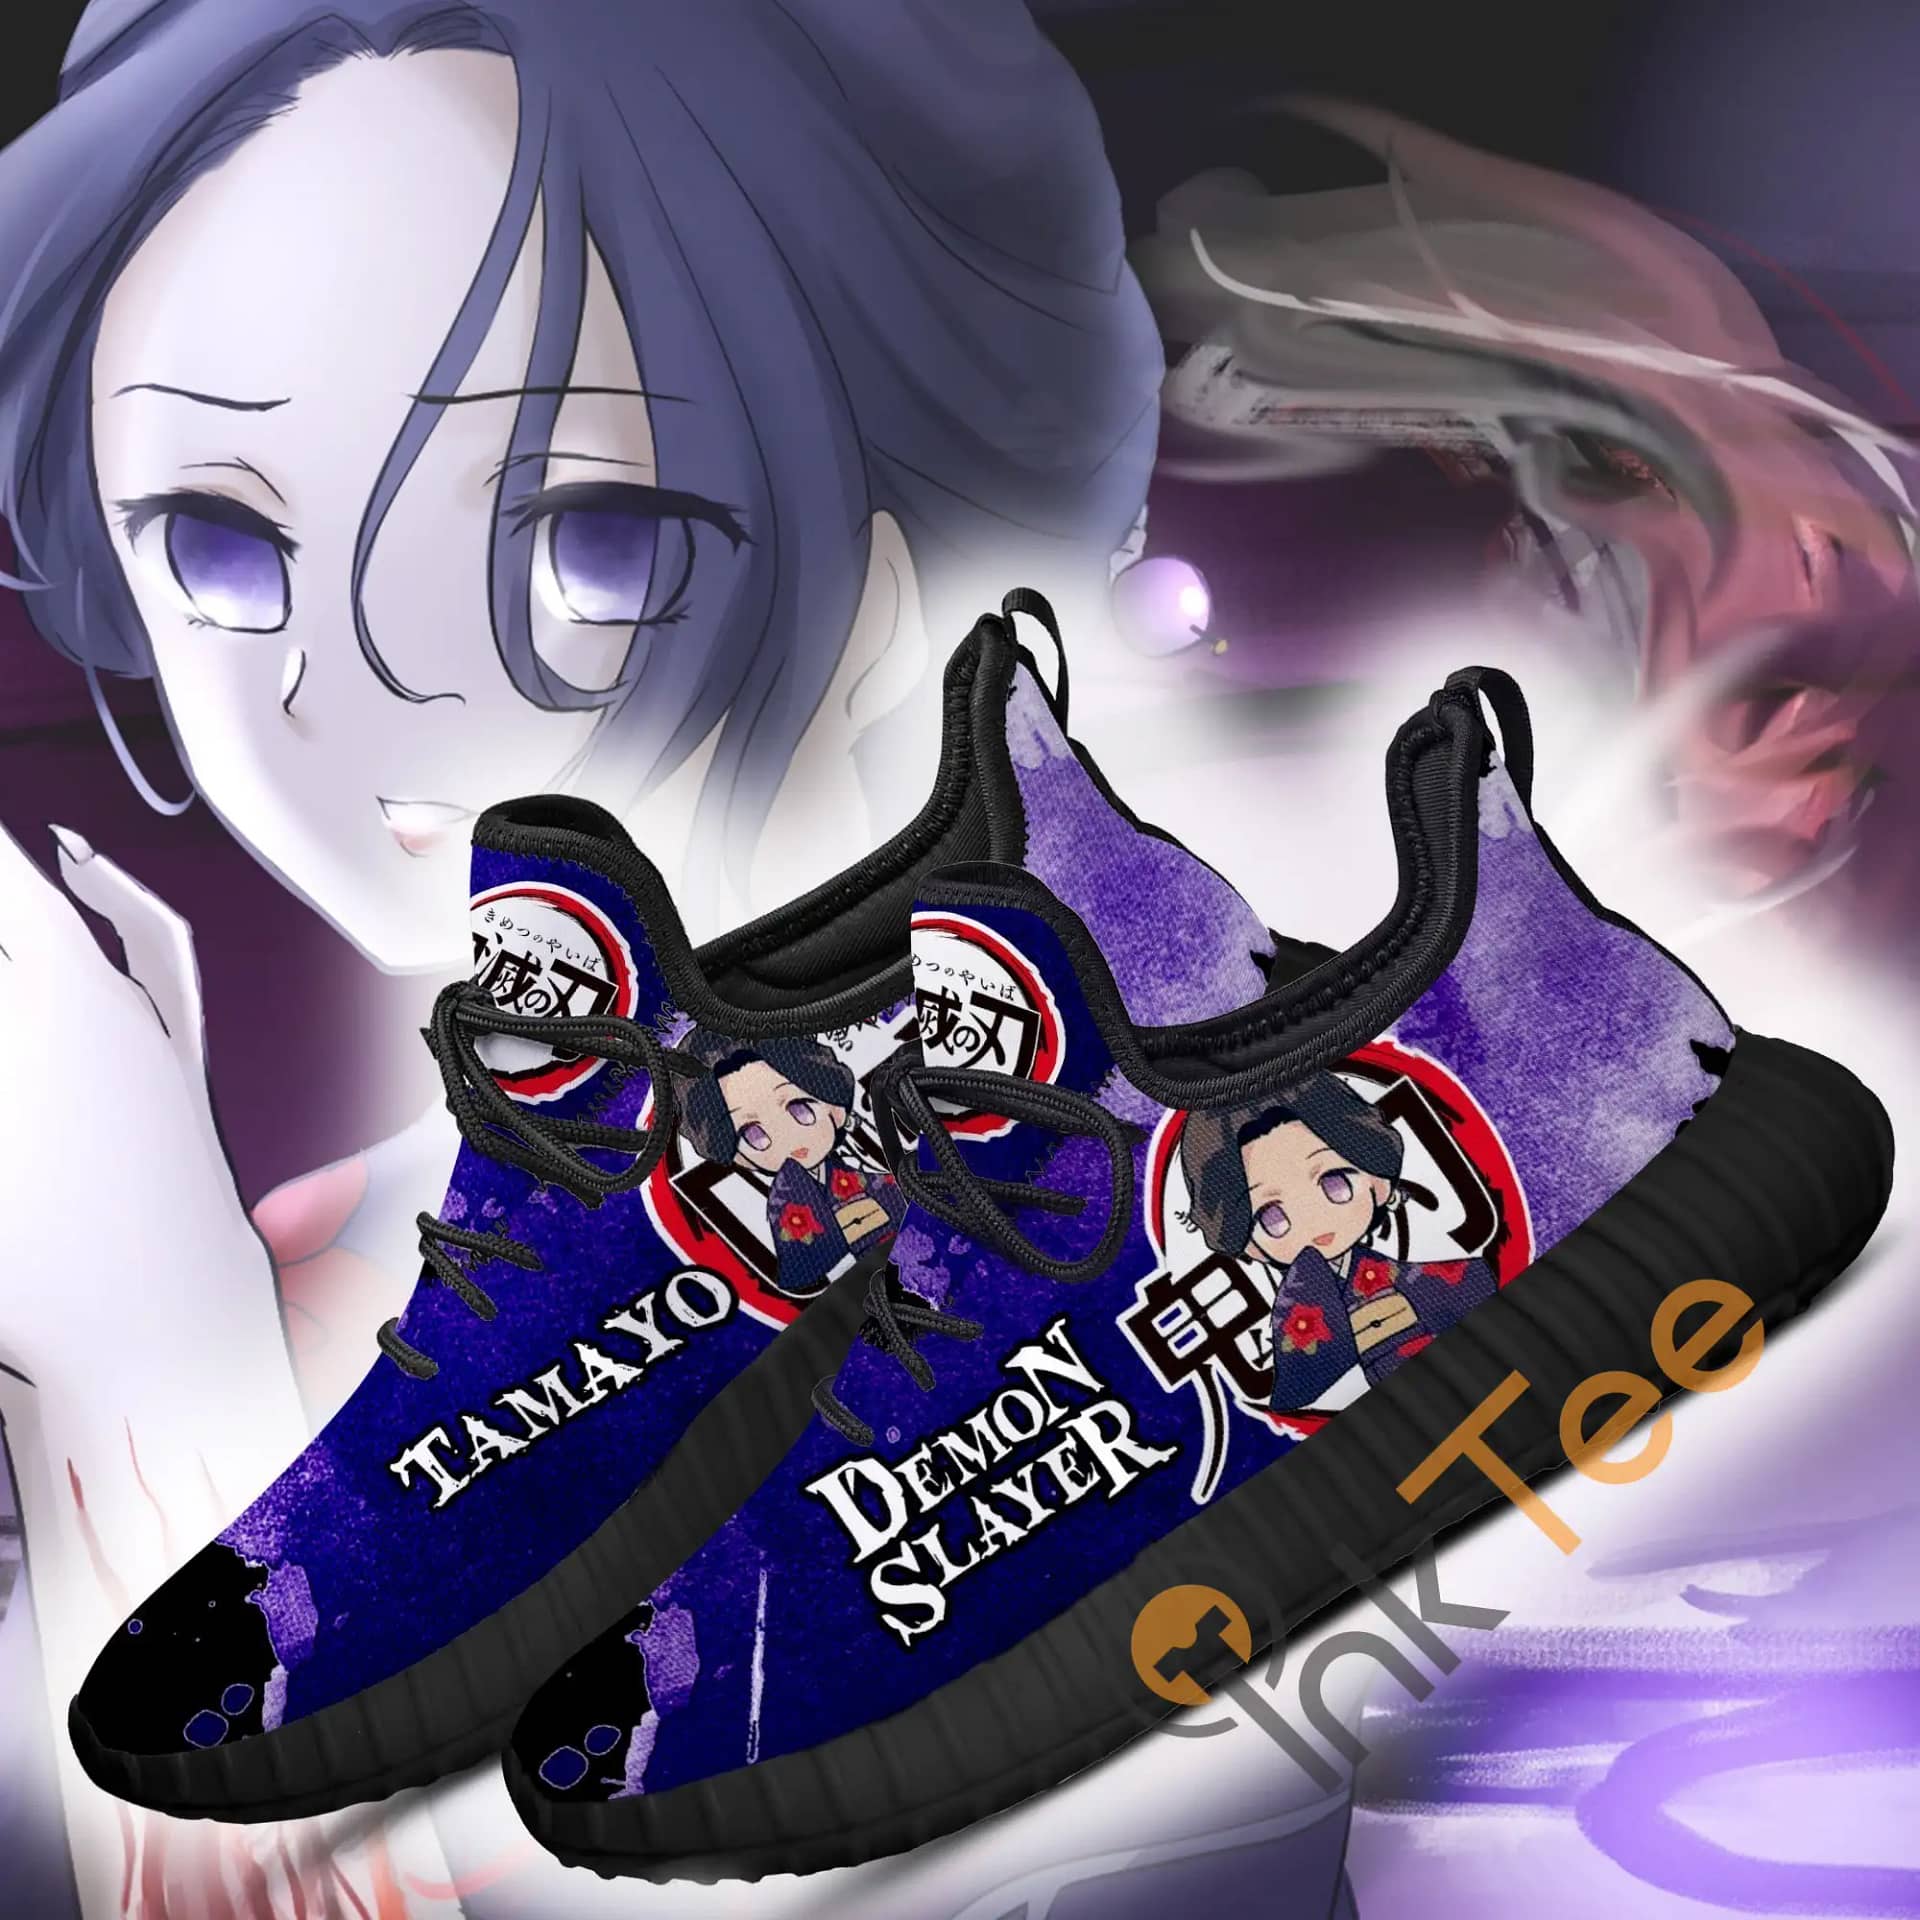 Tamyo Costume Demon Slayer Anime Amazon Reze Shoes